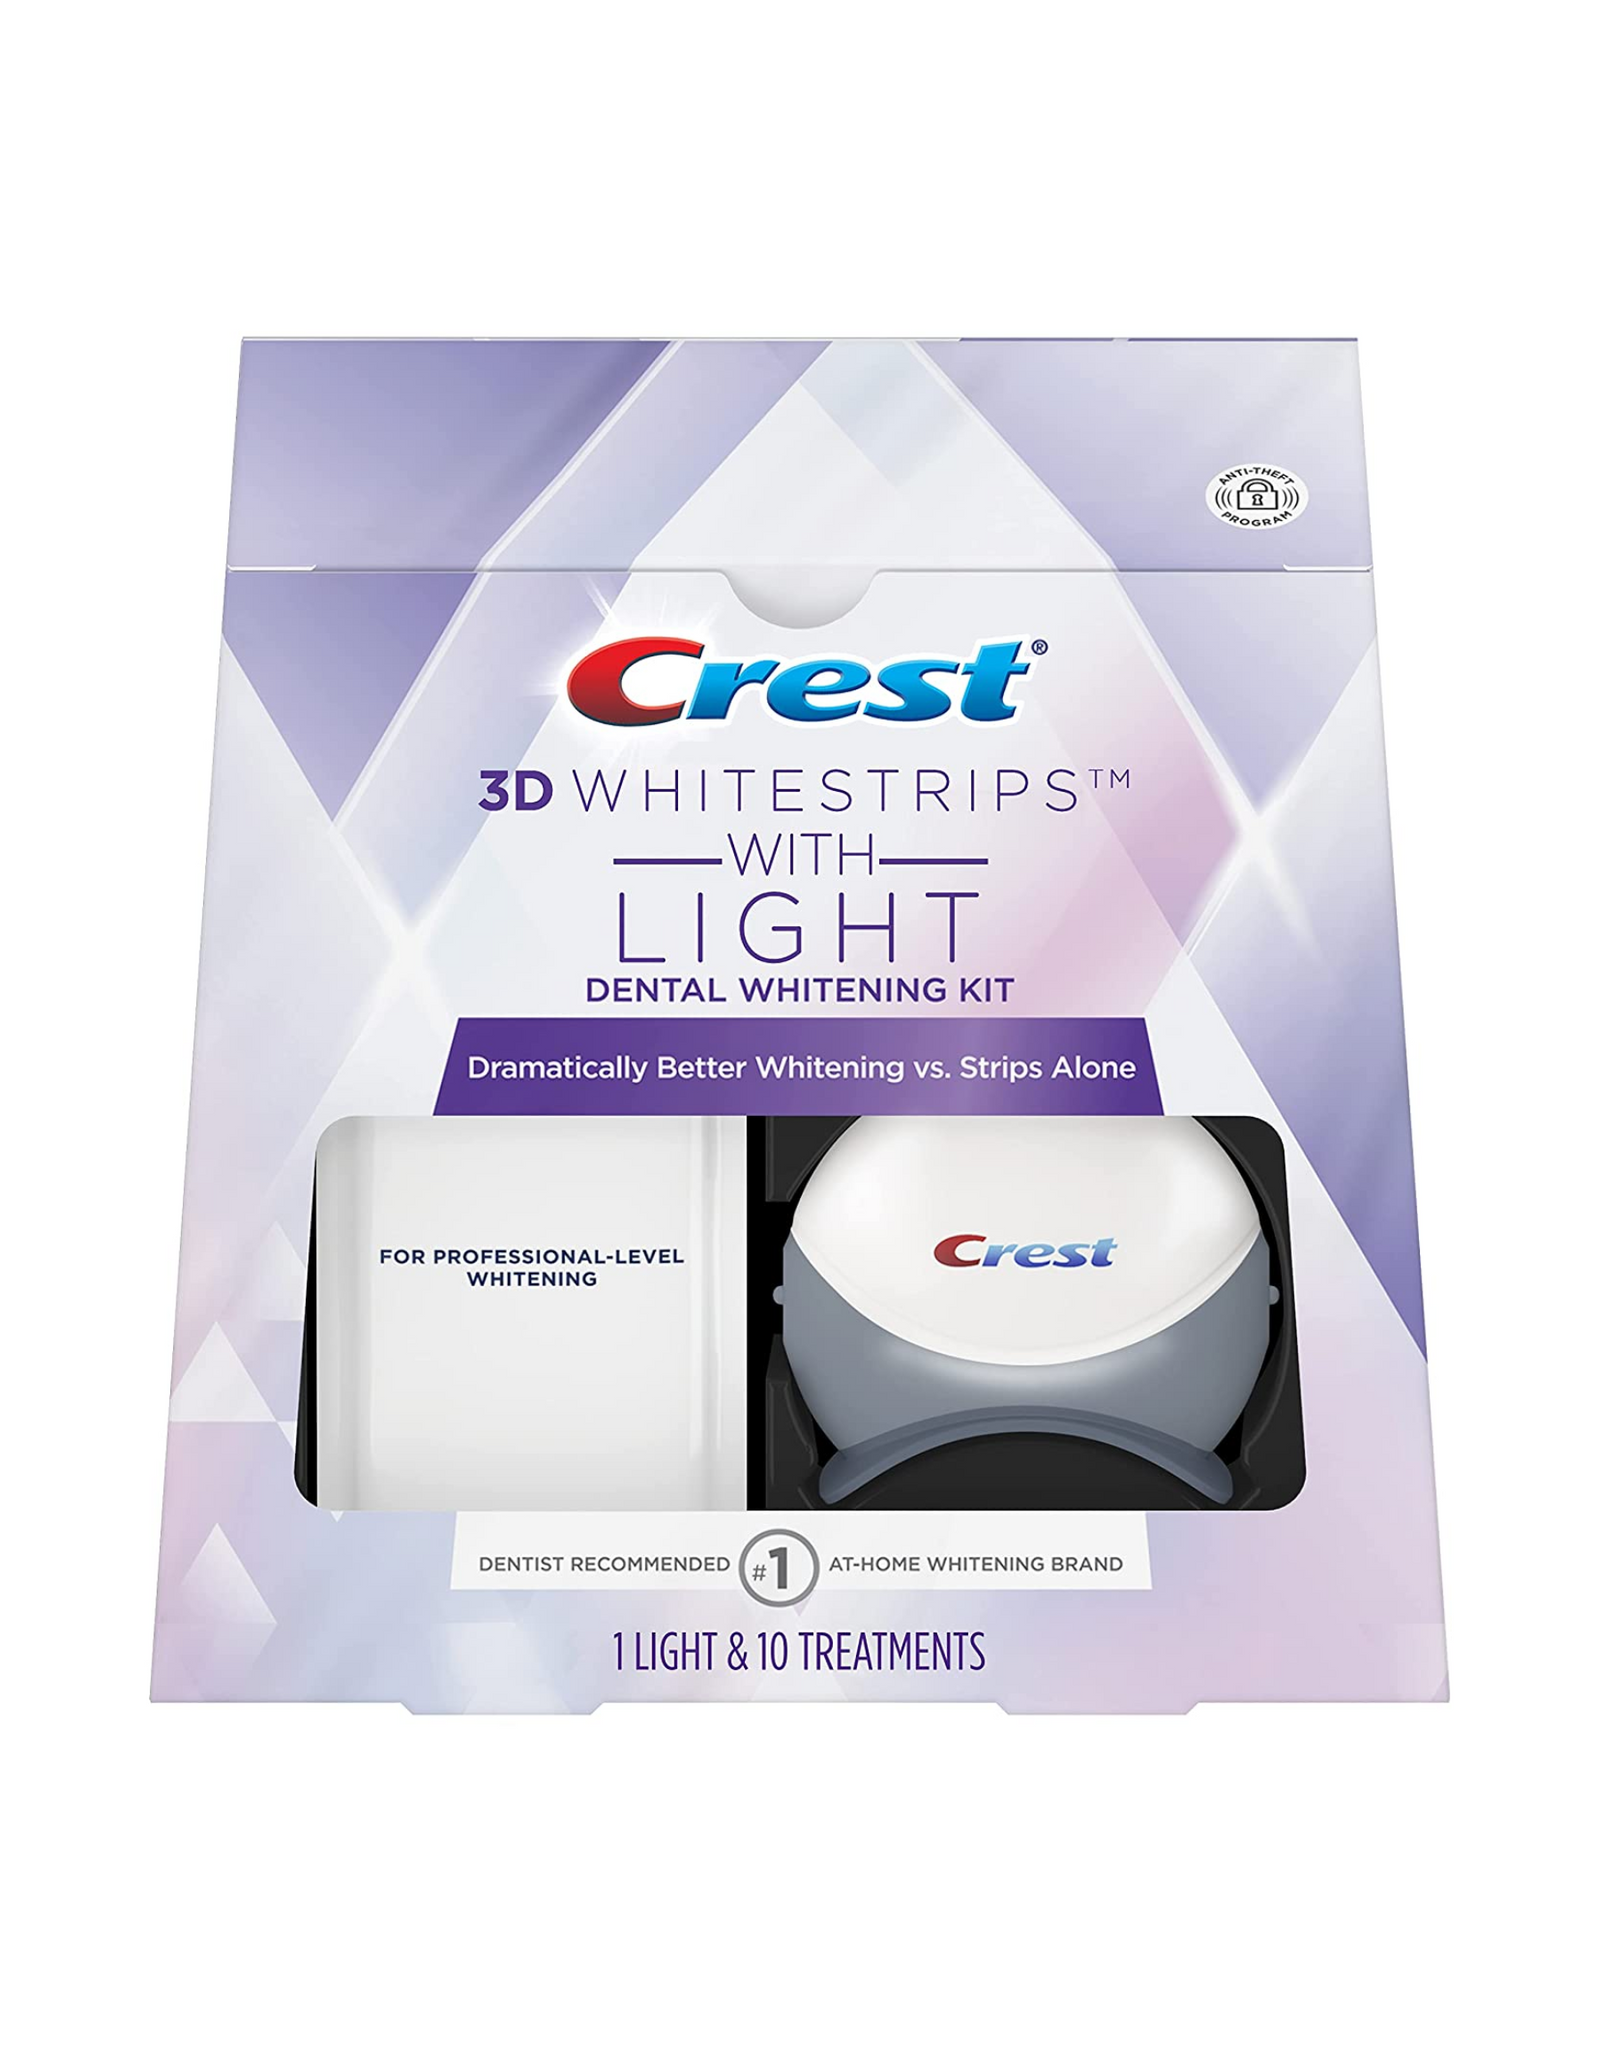 Crest 3D Whitestrips with Light, Dental Whitening Kit, 1 Light & 10 Treatements